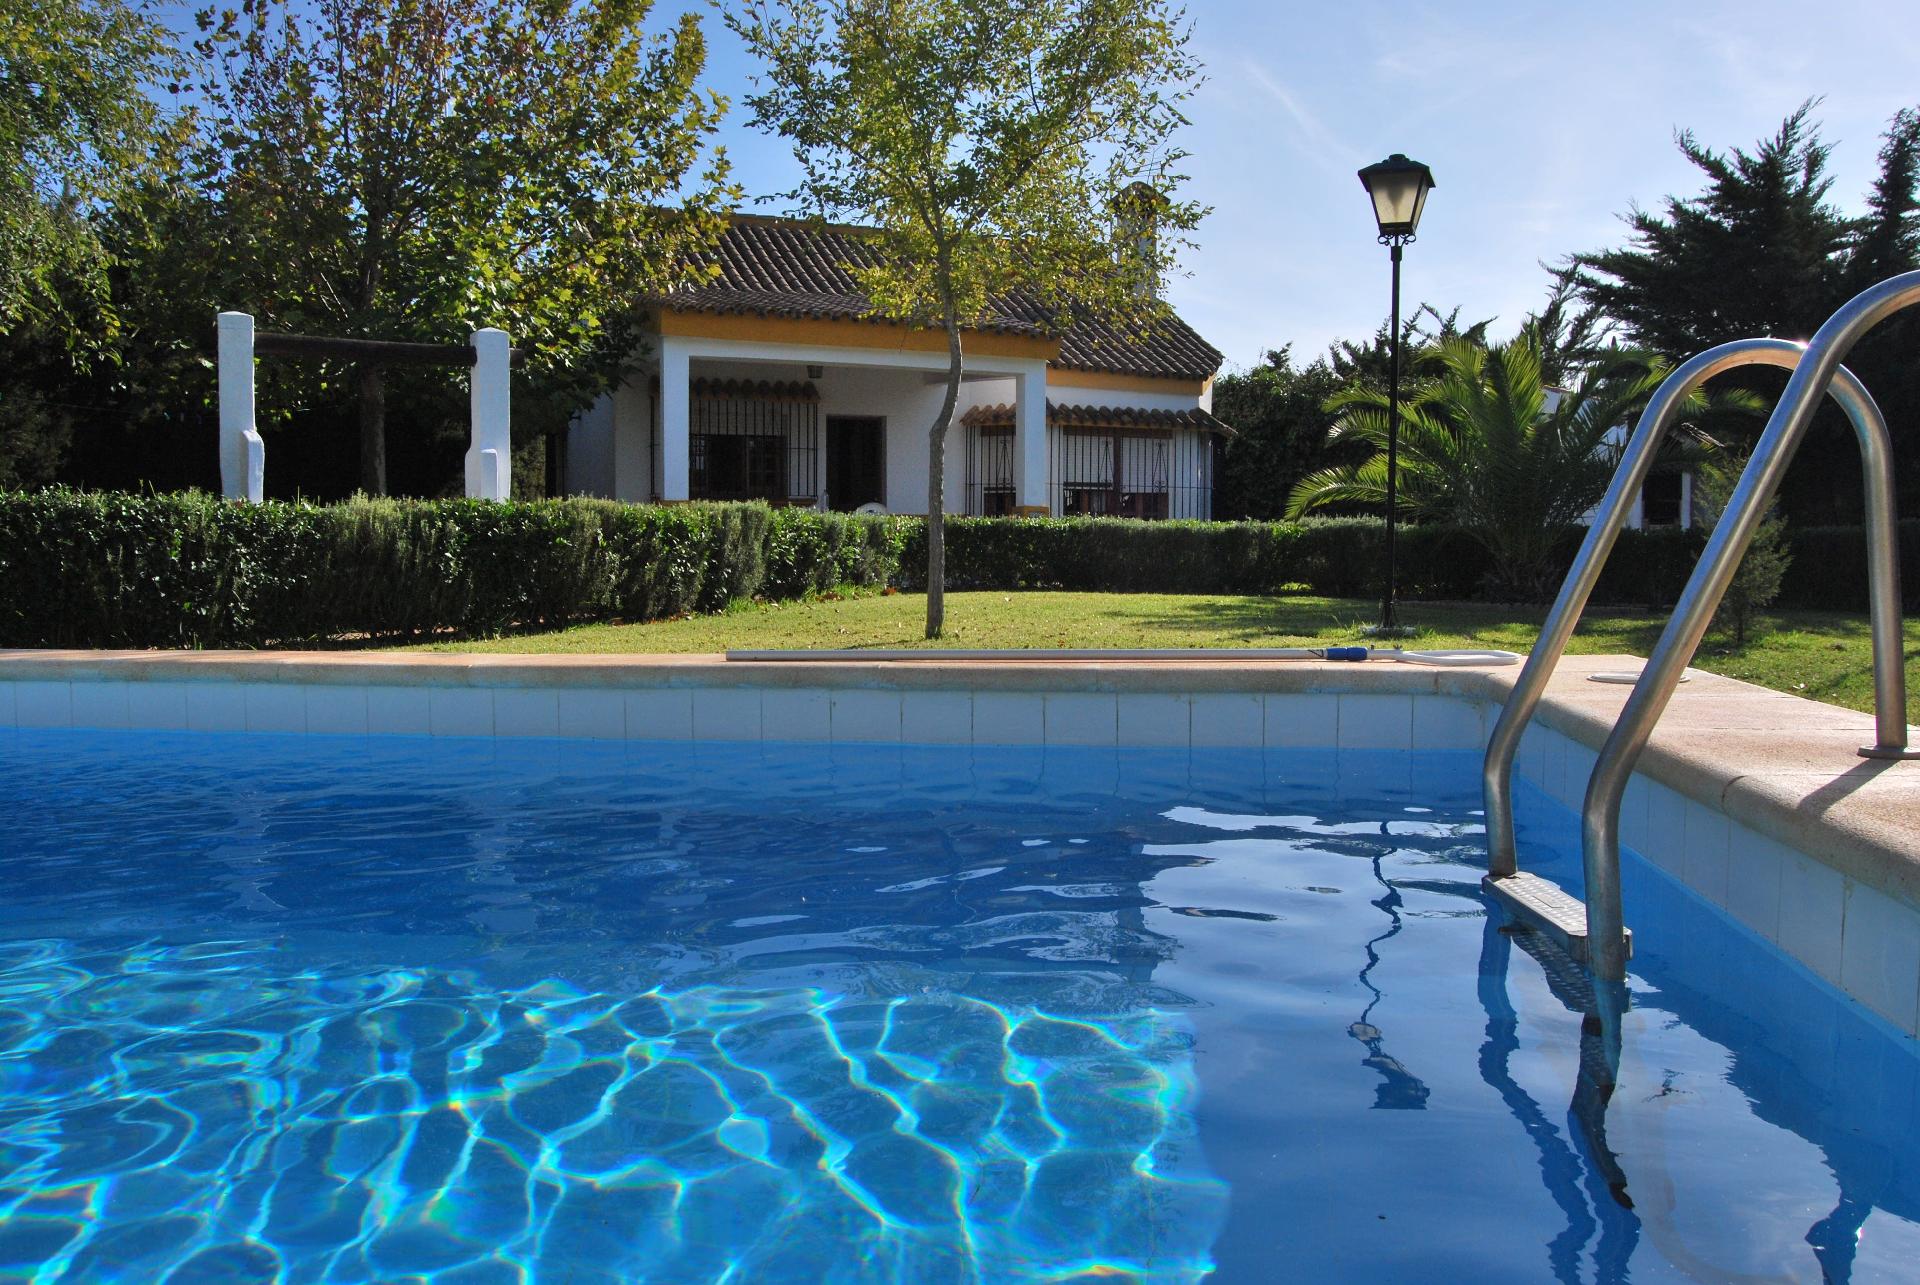 Ferienhaus mit Privatpool für 5 Personen ca.  Ferienhaus in Spanien